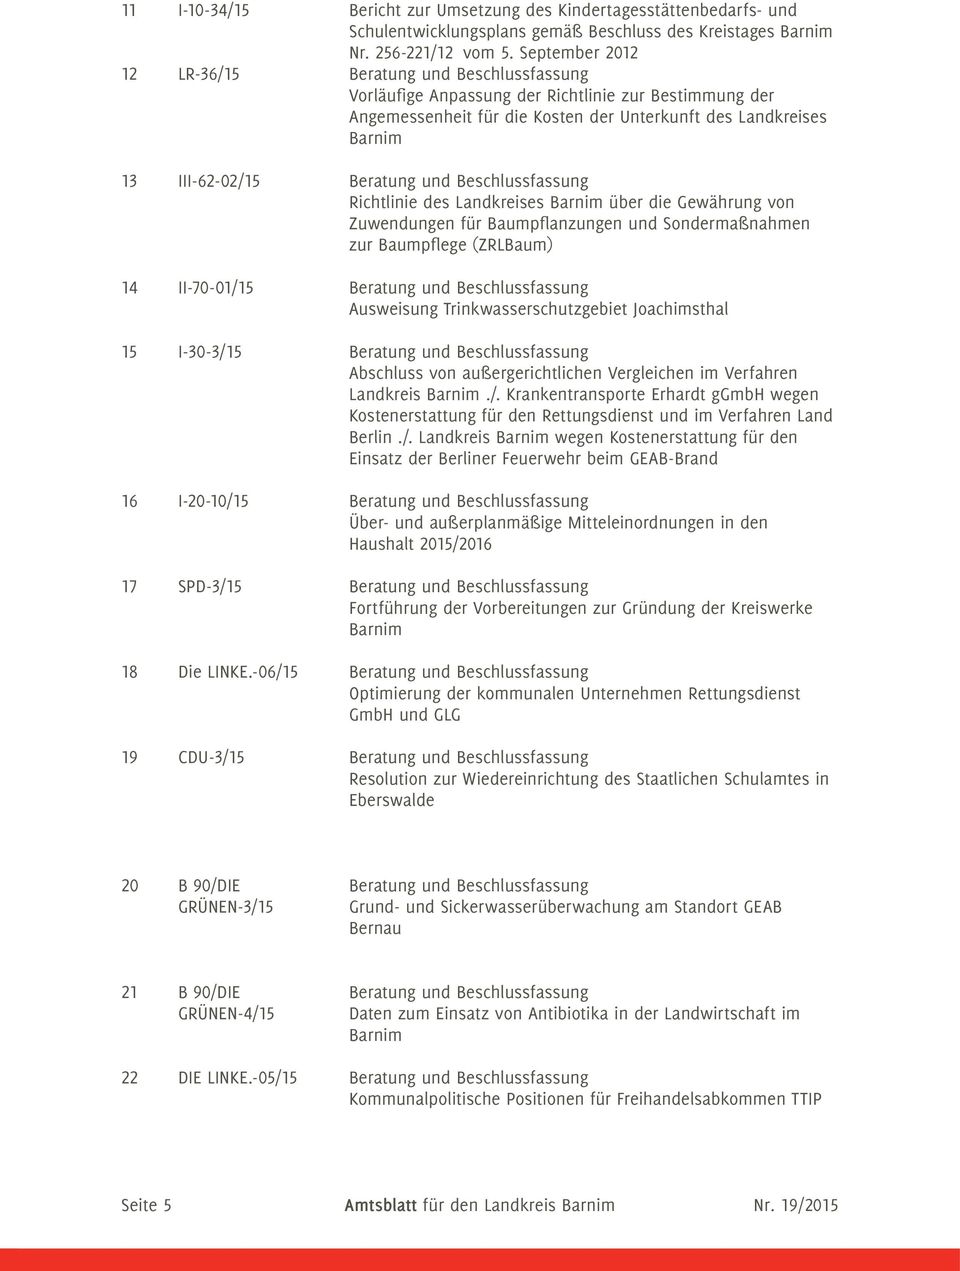 Beratung und Beschlussfassung Richtlinie des Landkreises Barnim über die Gewährung von Zuwendungen für Baumpflanzungen und Sondermaßnahmen zur Baumpflege (ZRLBaum) 14 II-70-01/15 Beratung und